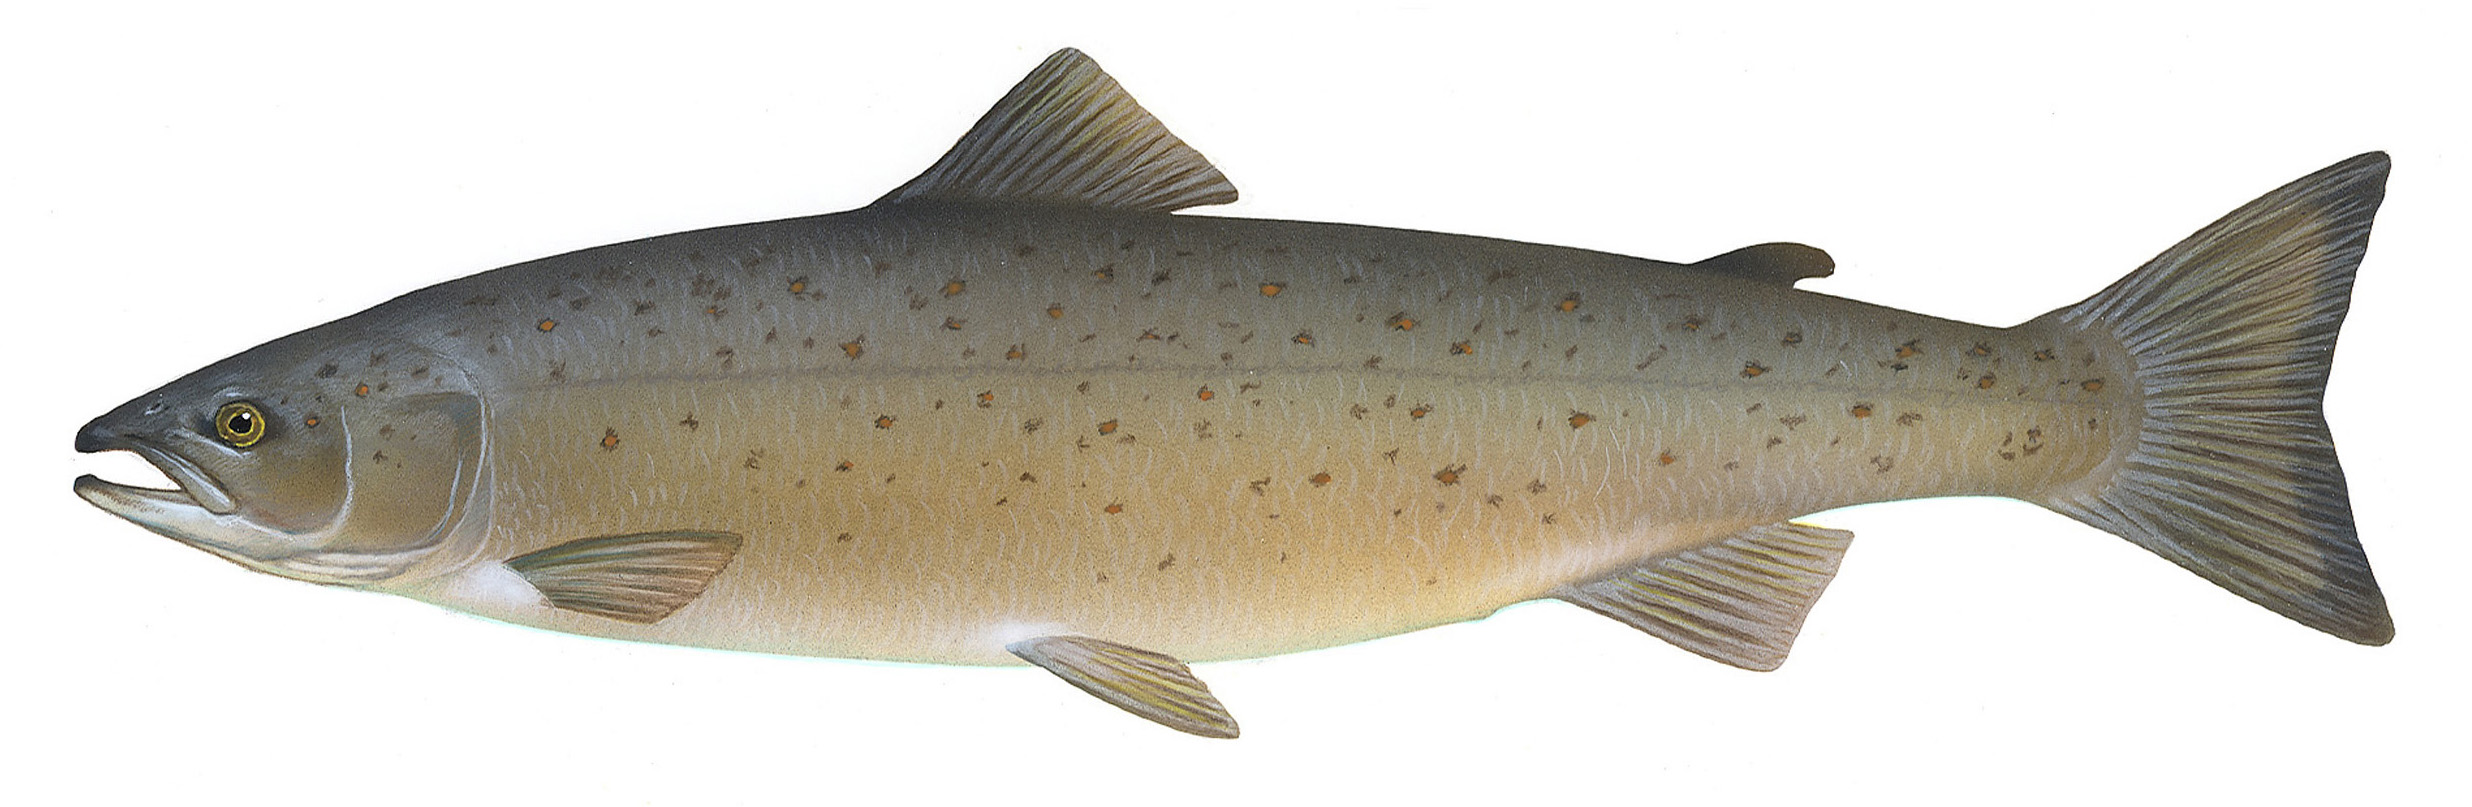 State fish of Maine